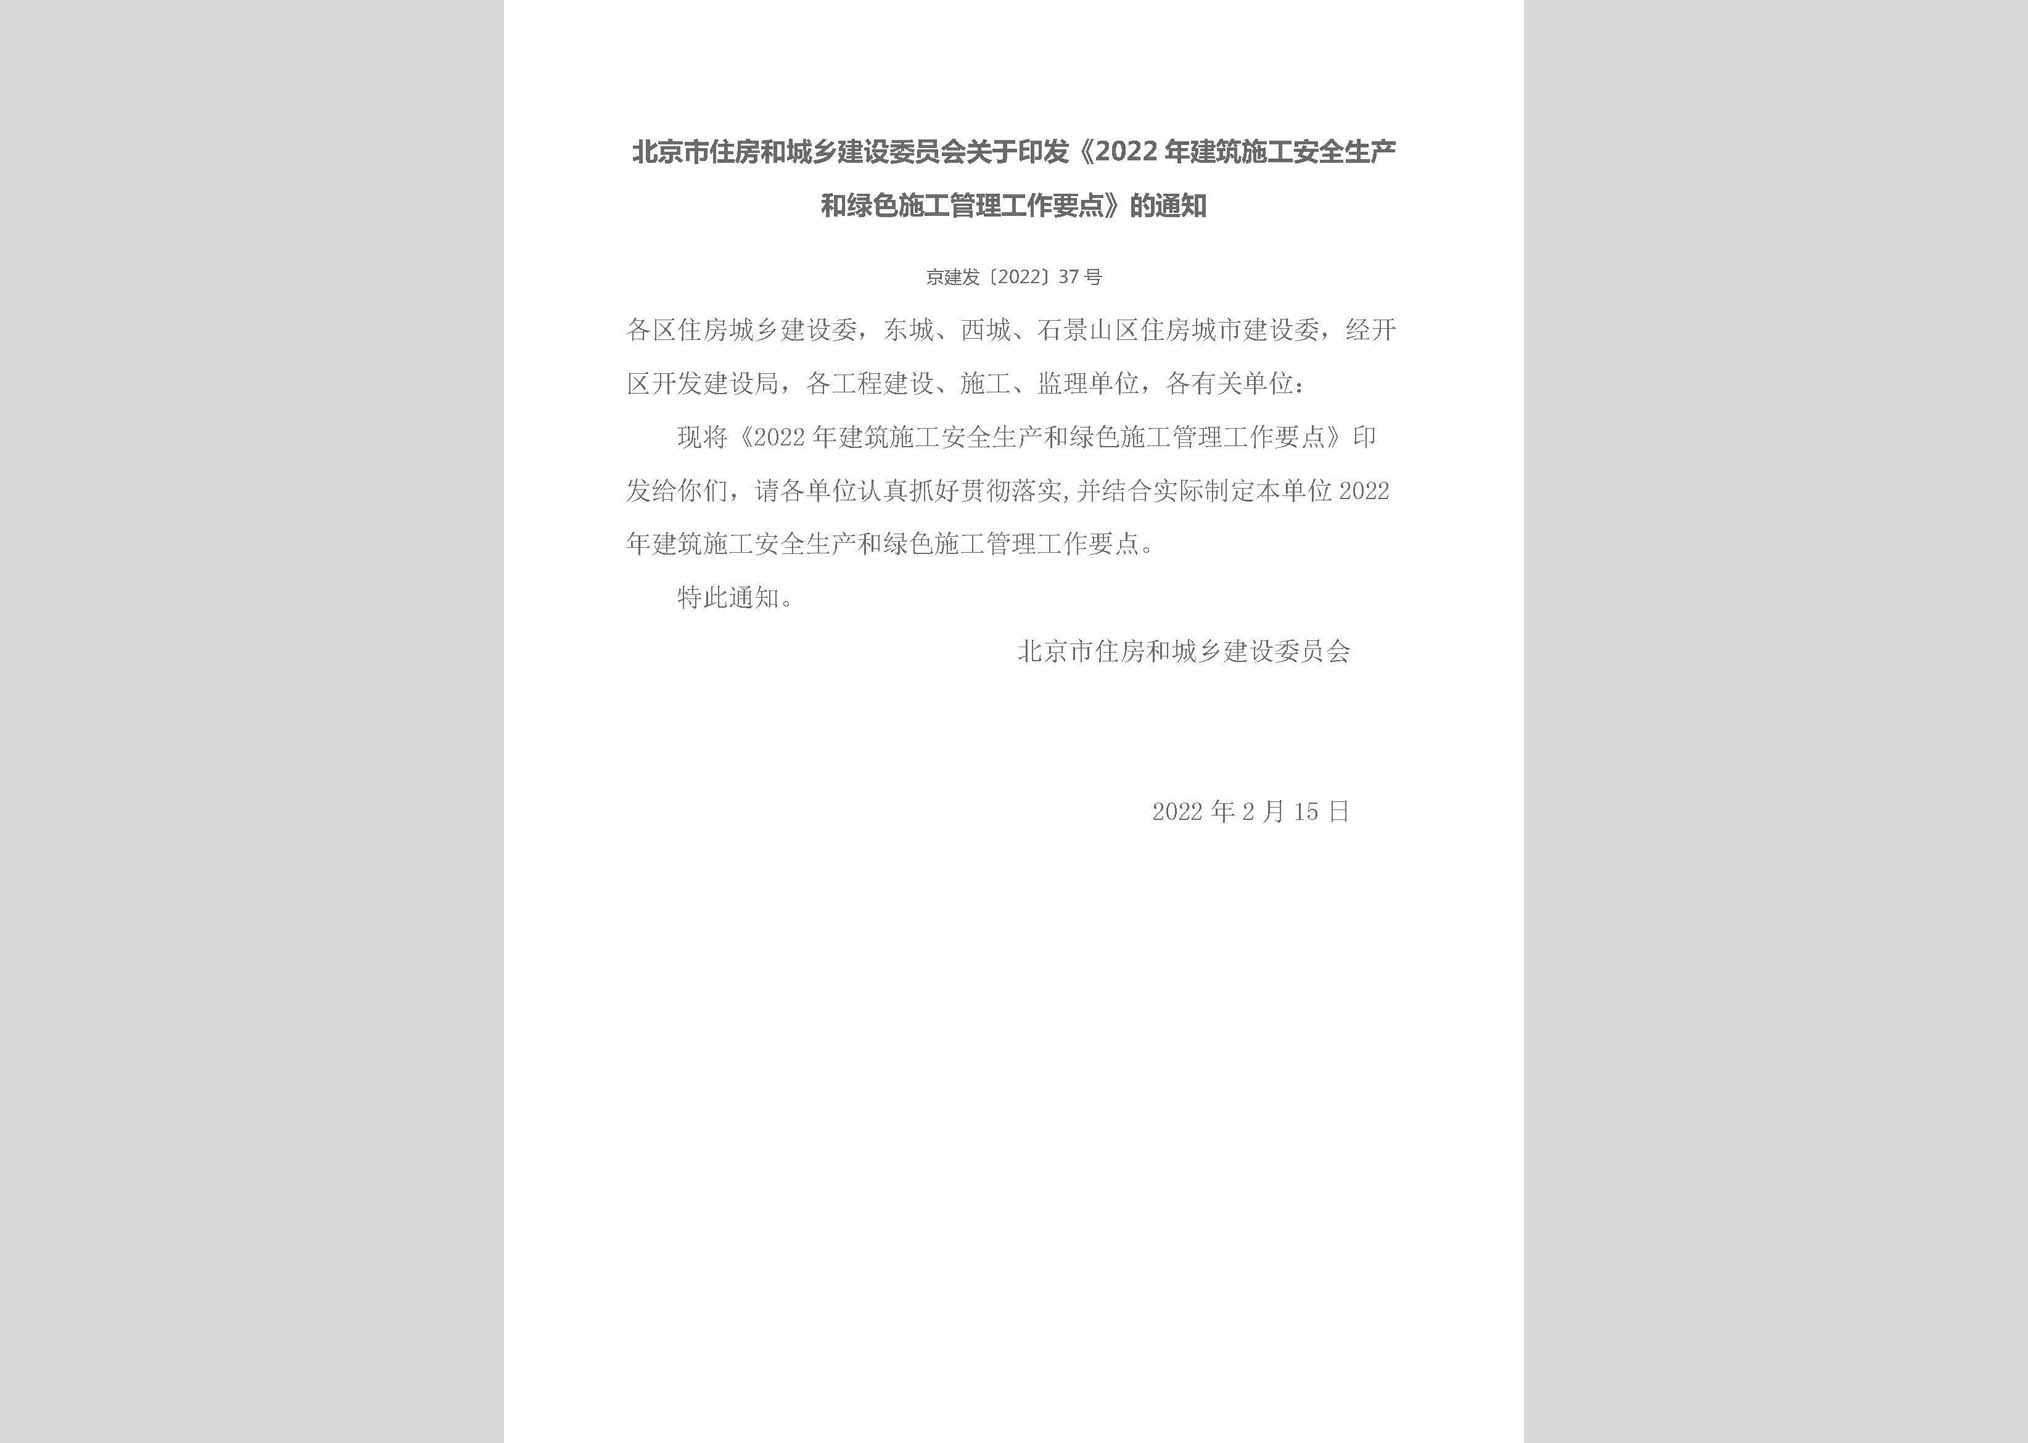 京建发[2022]37号：北京市住房和城乡建设委员会关于印发《2022年建筑施工安全生产和绿色施工管理工作要点》的通知